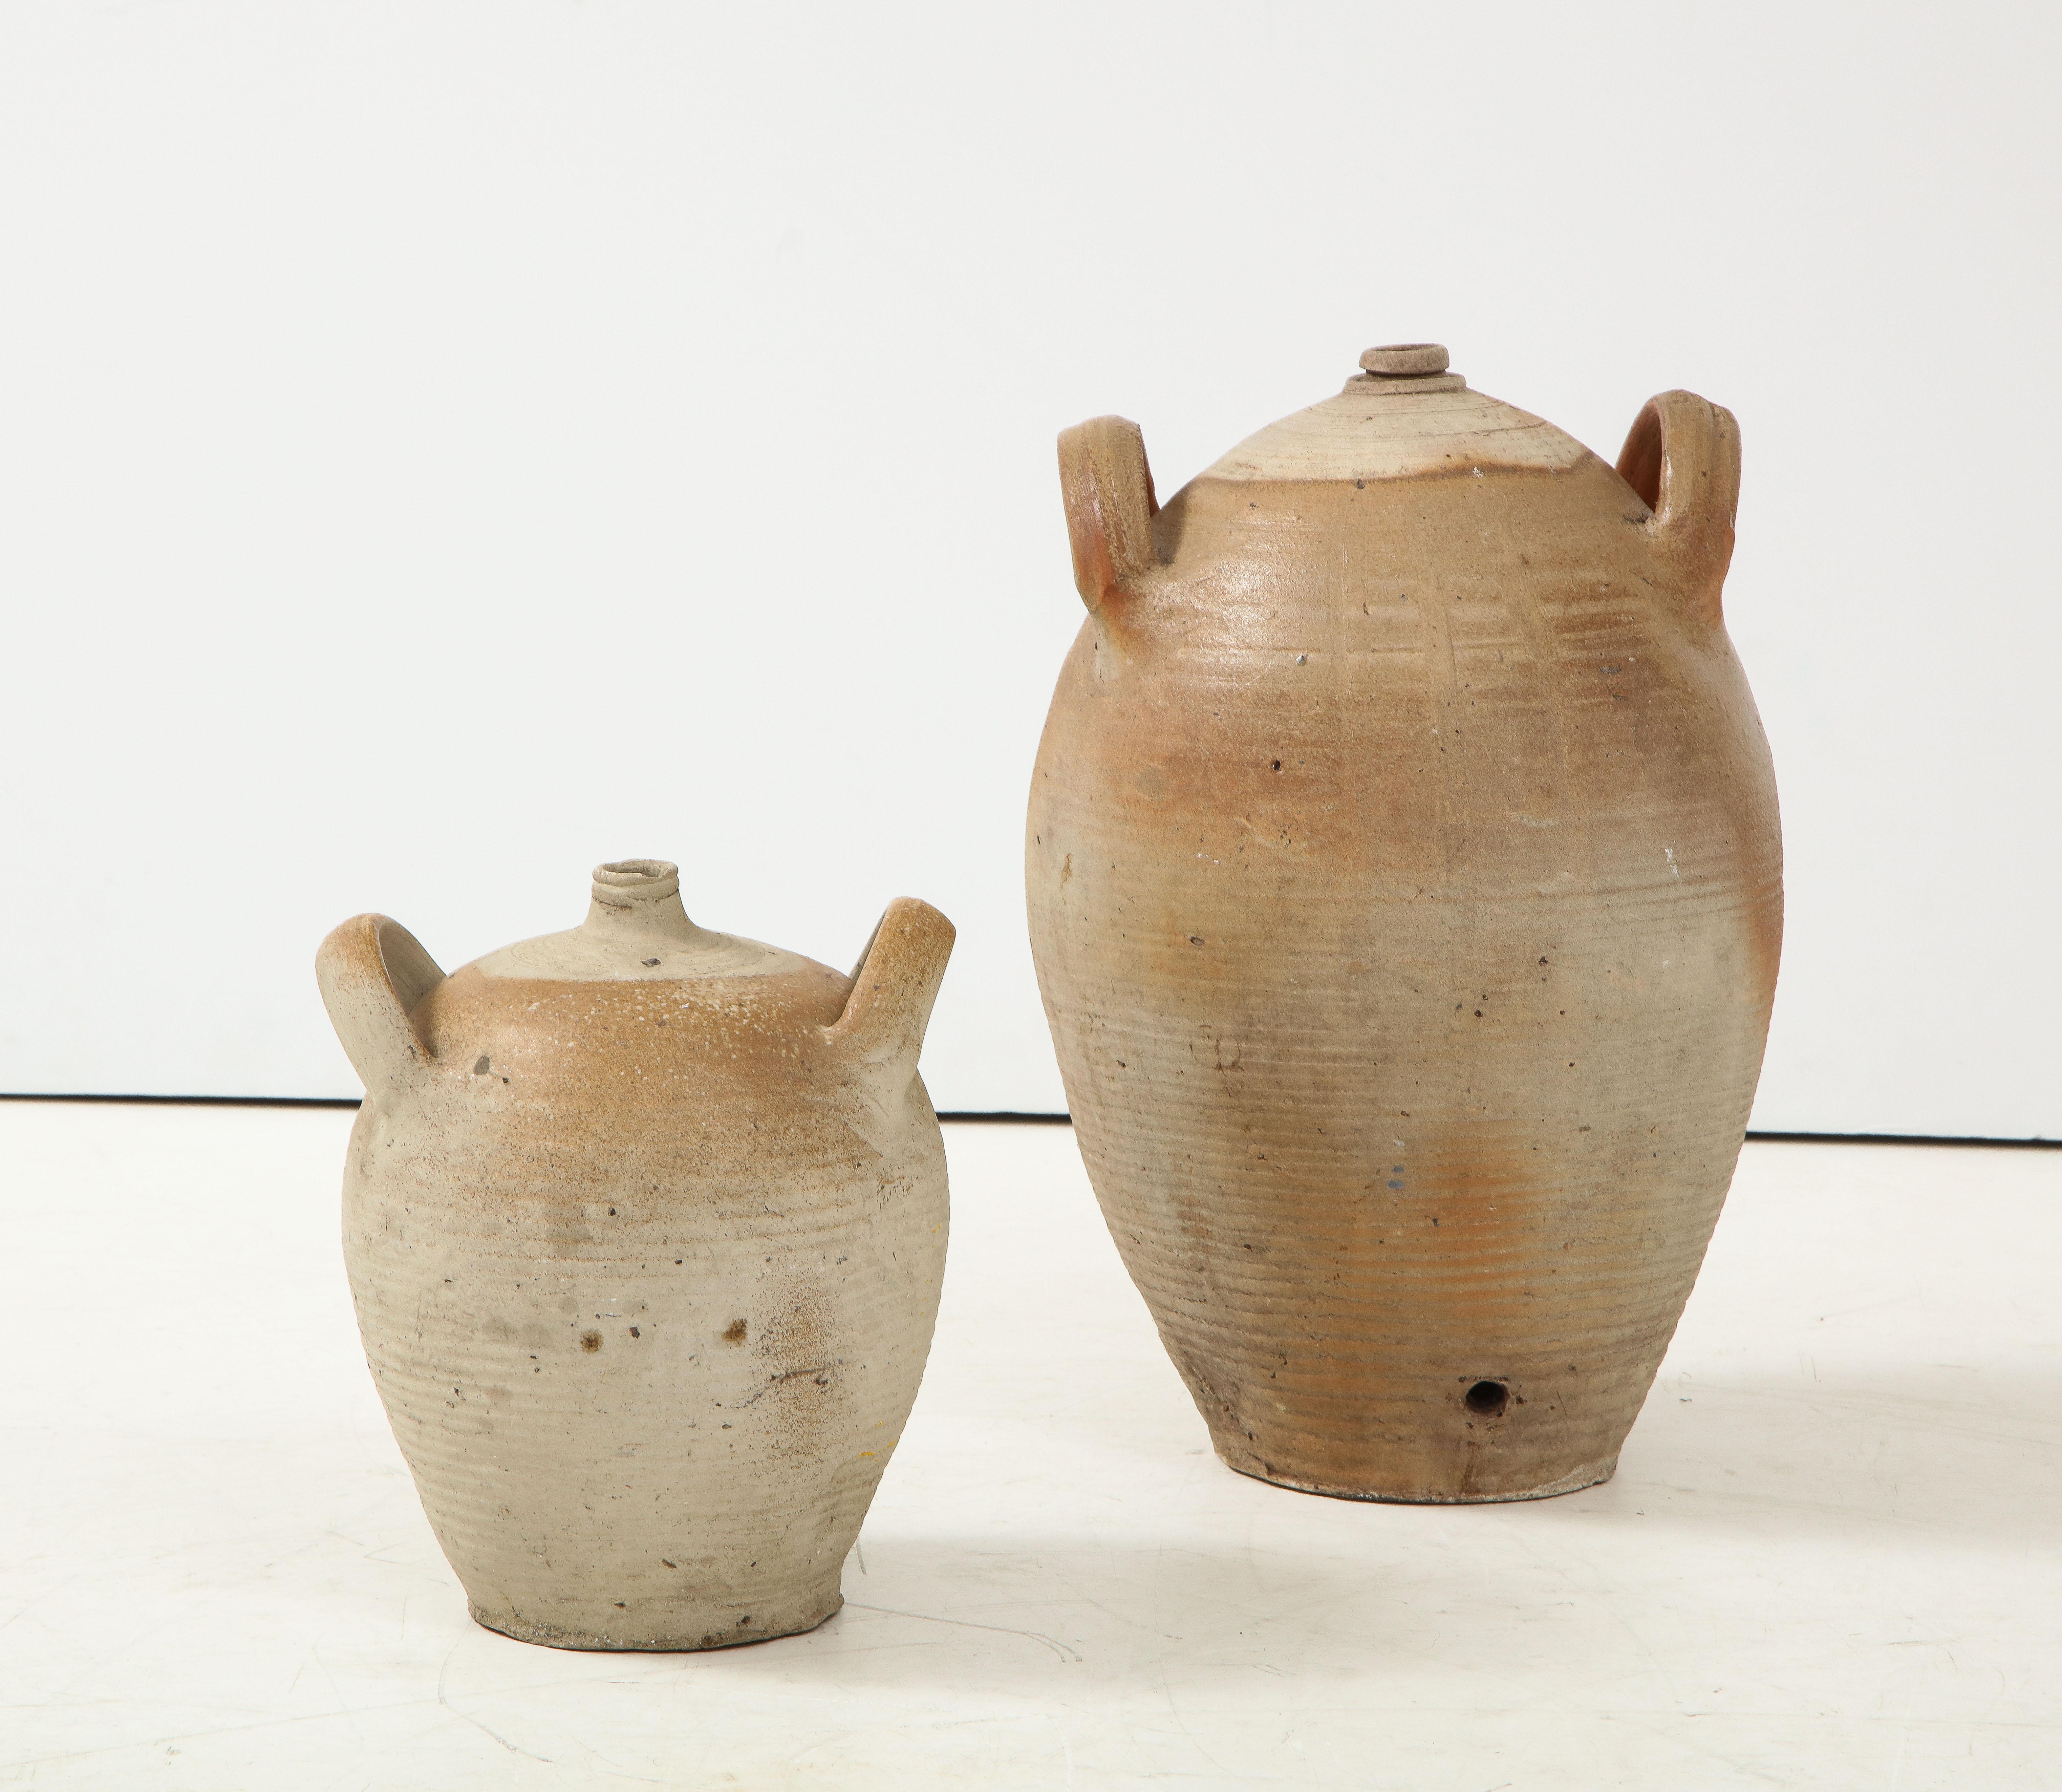 French Provincial Stoneware Vintage Pottery Oil Jar, Jug, Vase or Vessel 2